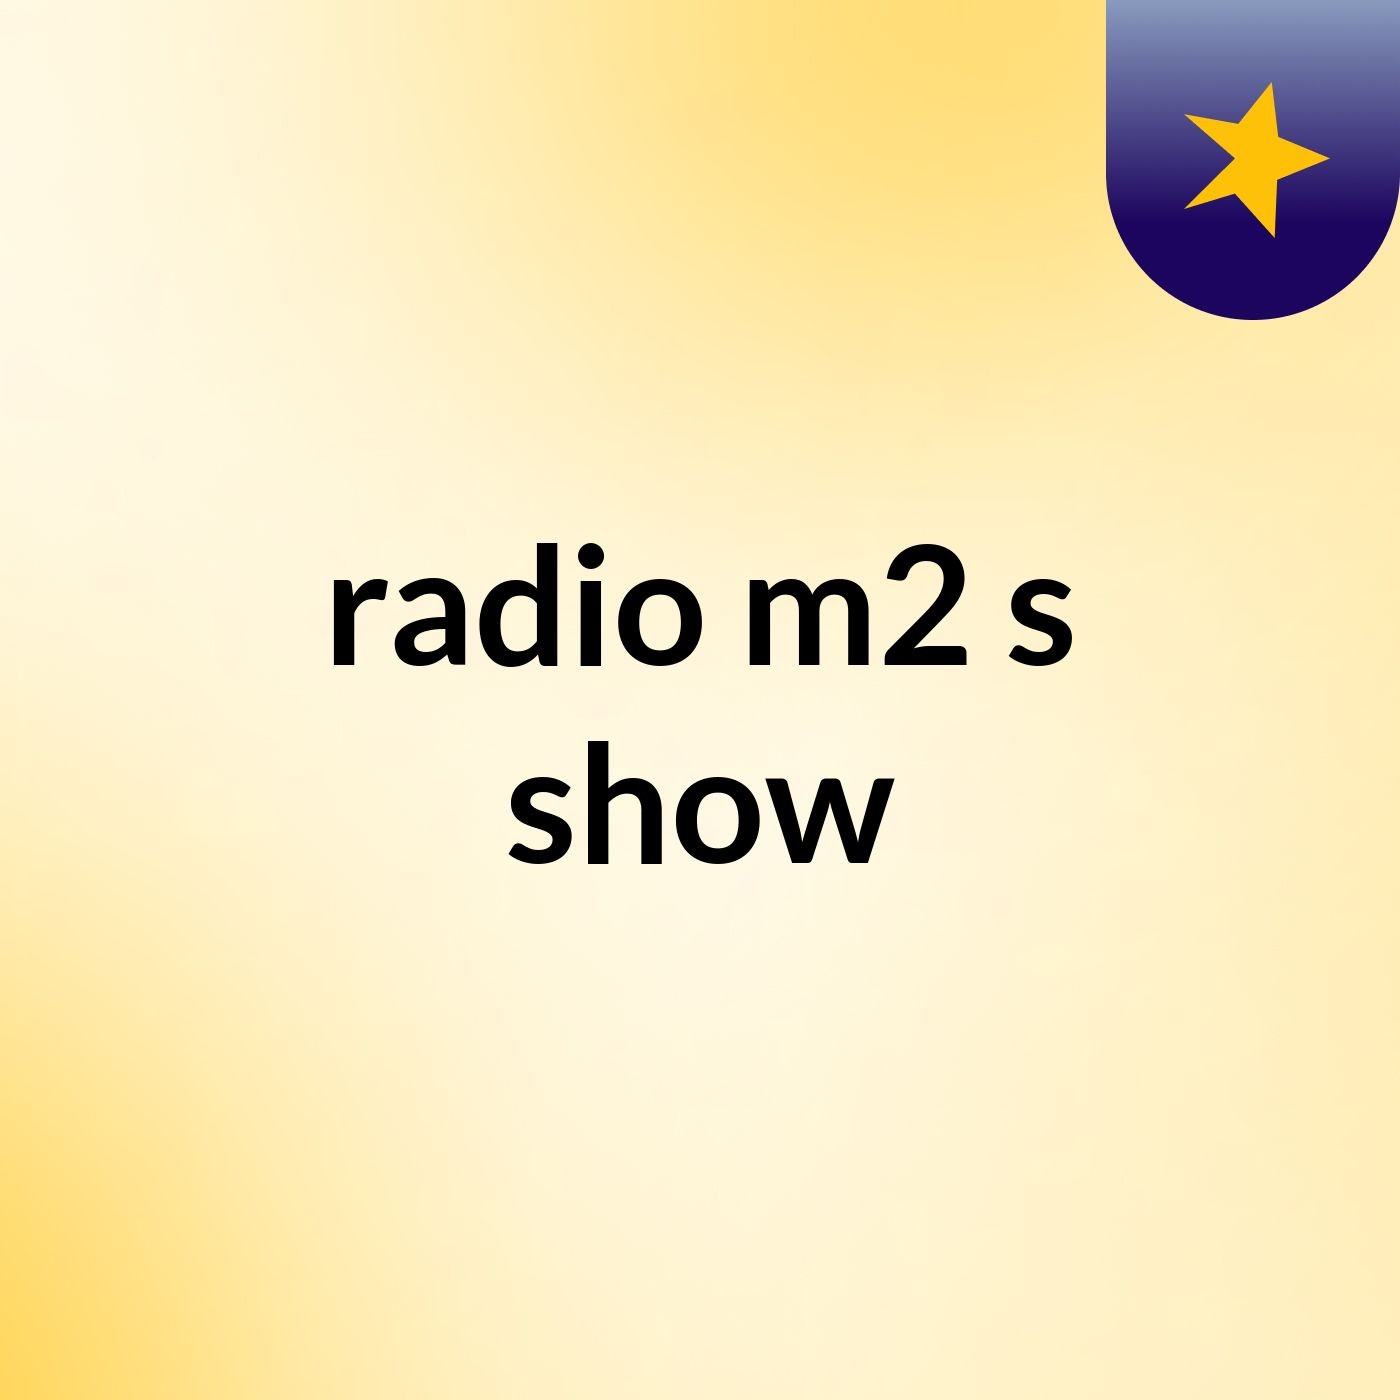 radio m2's show